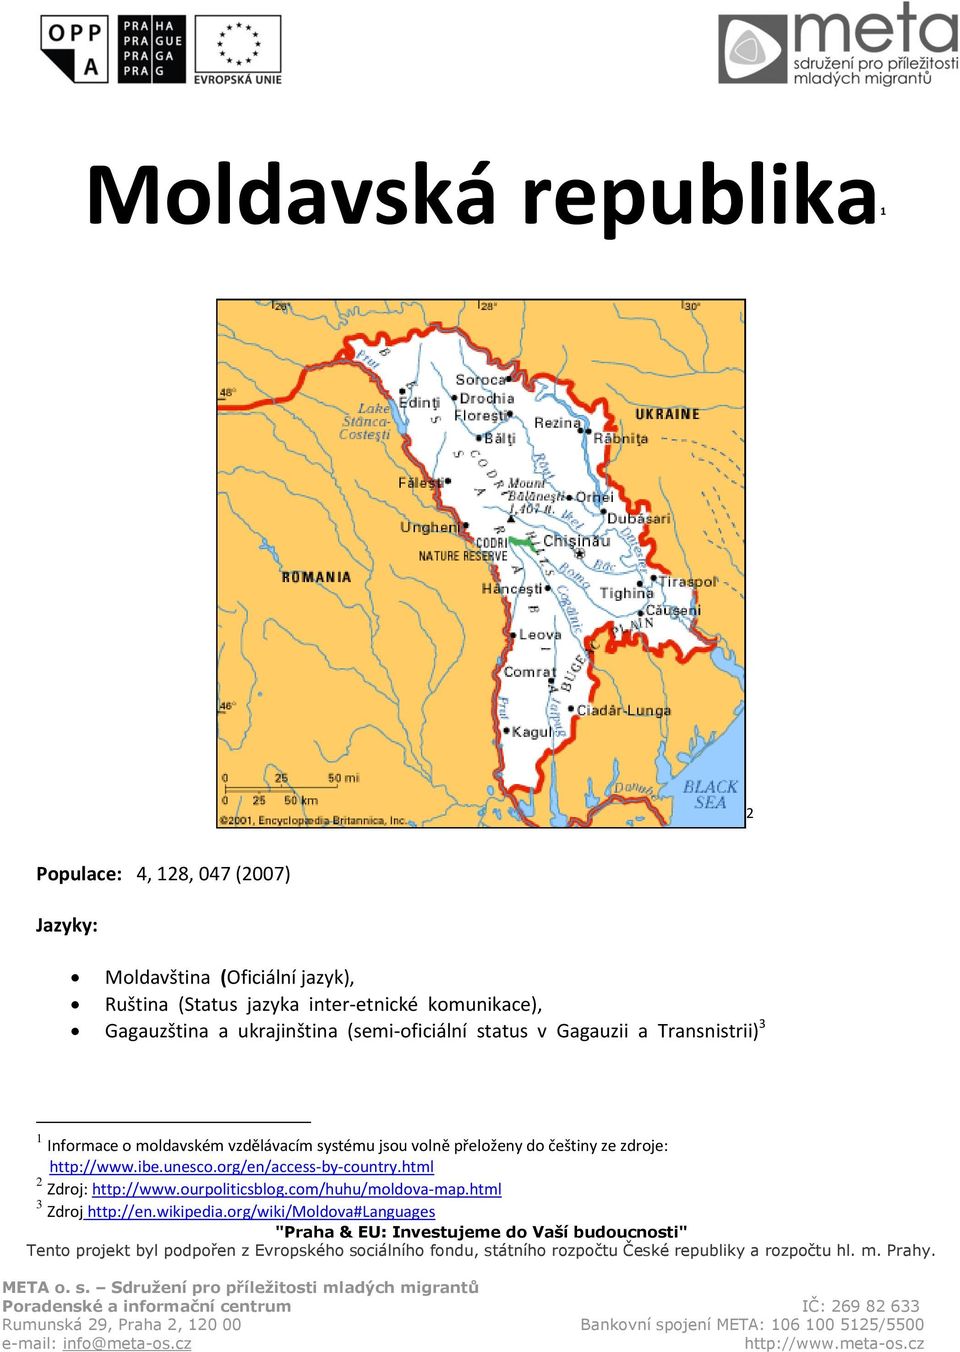 o moldavském vzdělávacím systému jsou volně přeloženy do češtiny ze zdroje: http://www.ibe.unesco.